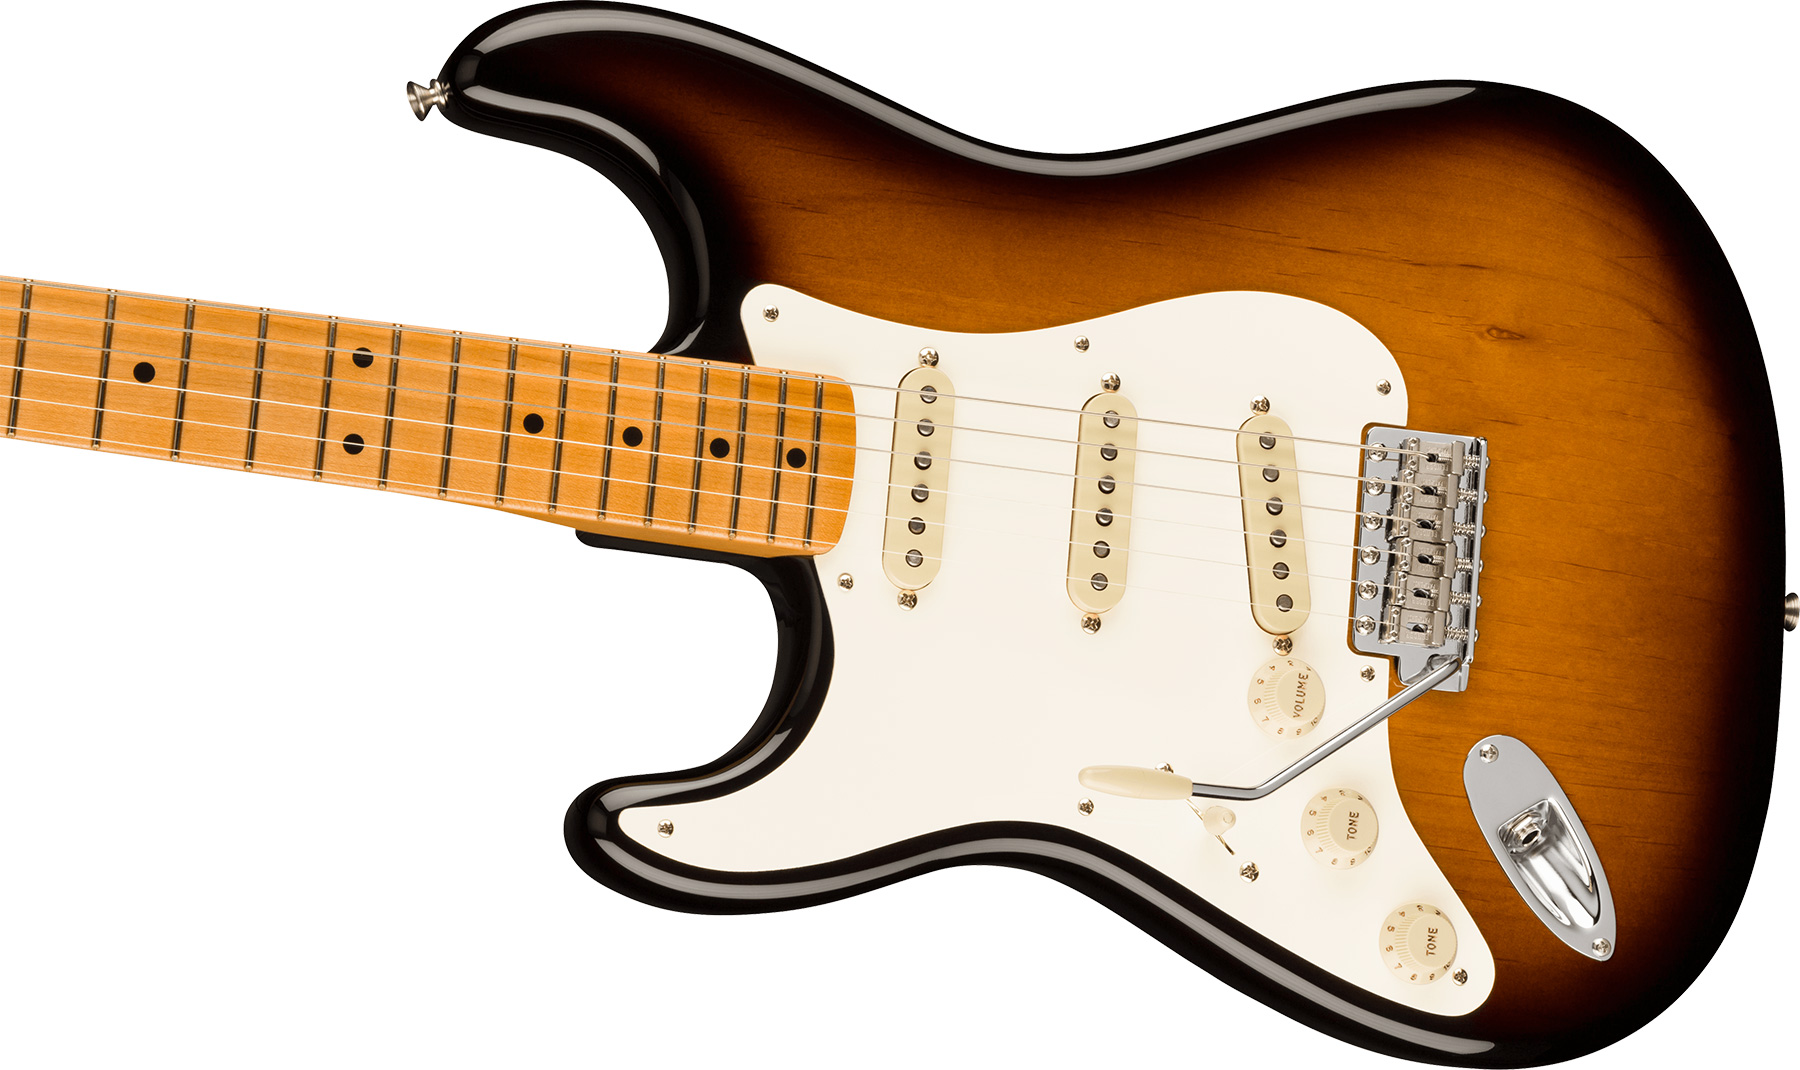 Fender Strat 1957 American Vintage Ii Lh Gaucher Usa 3s Trem Mn - 2-color Sunburst - Left-handed electric guitar - Variation 2